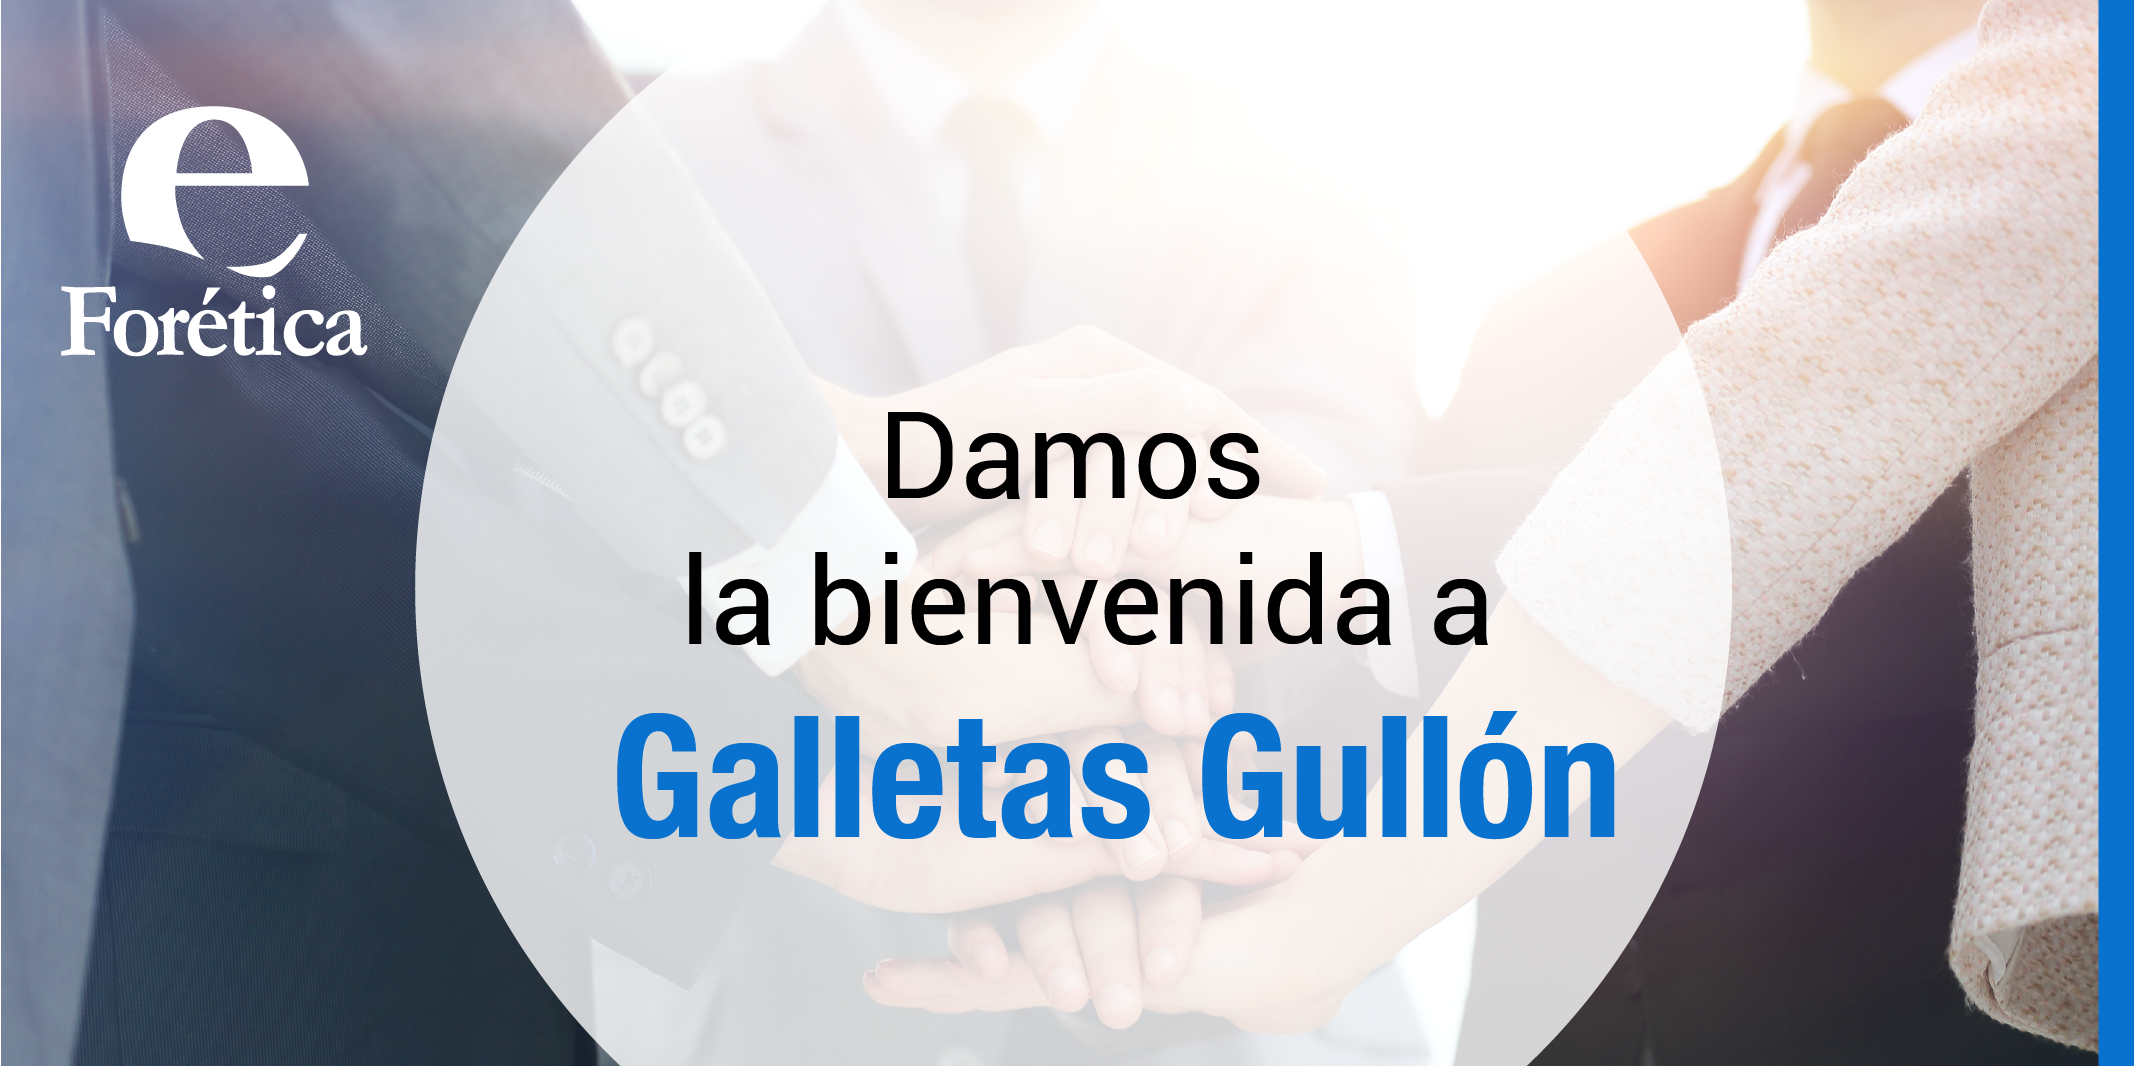 Forética da la bienvenida a Galletas Gullón